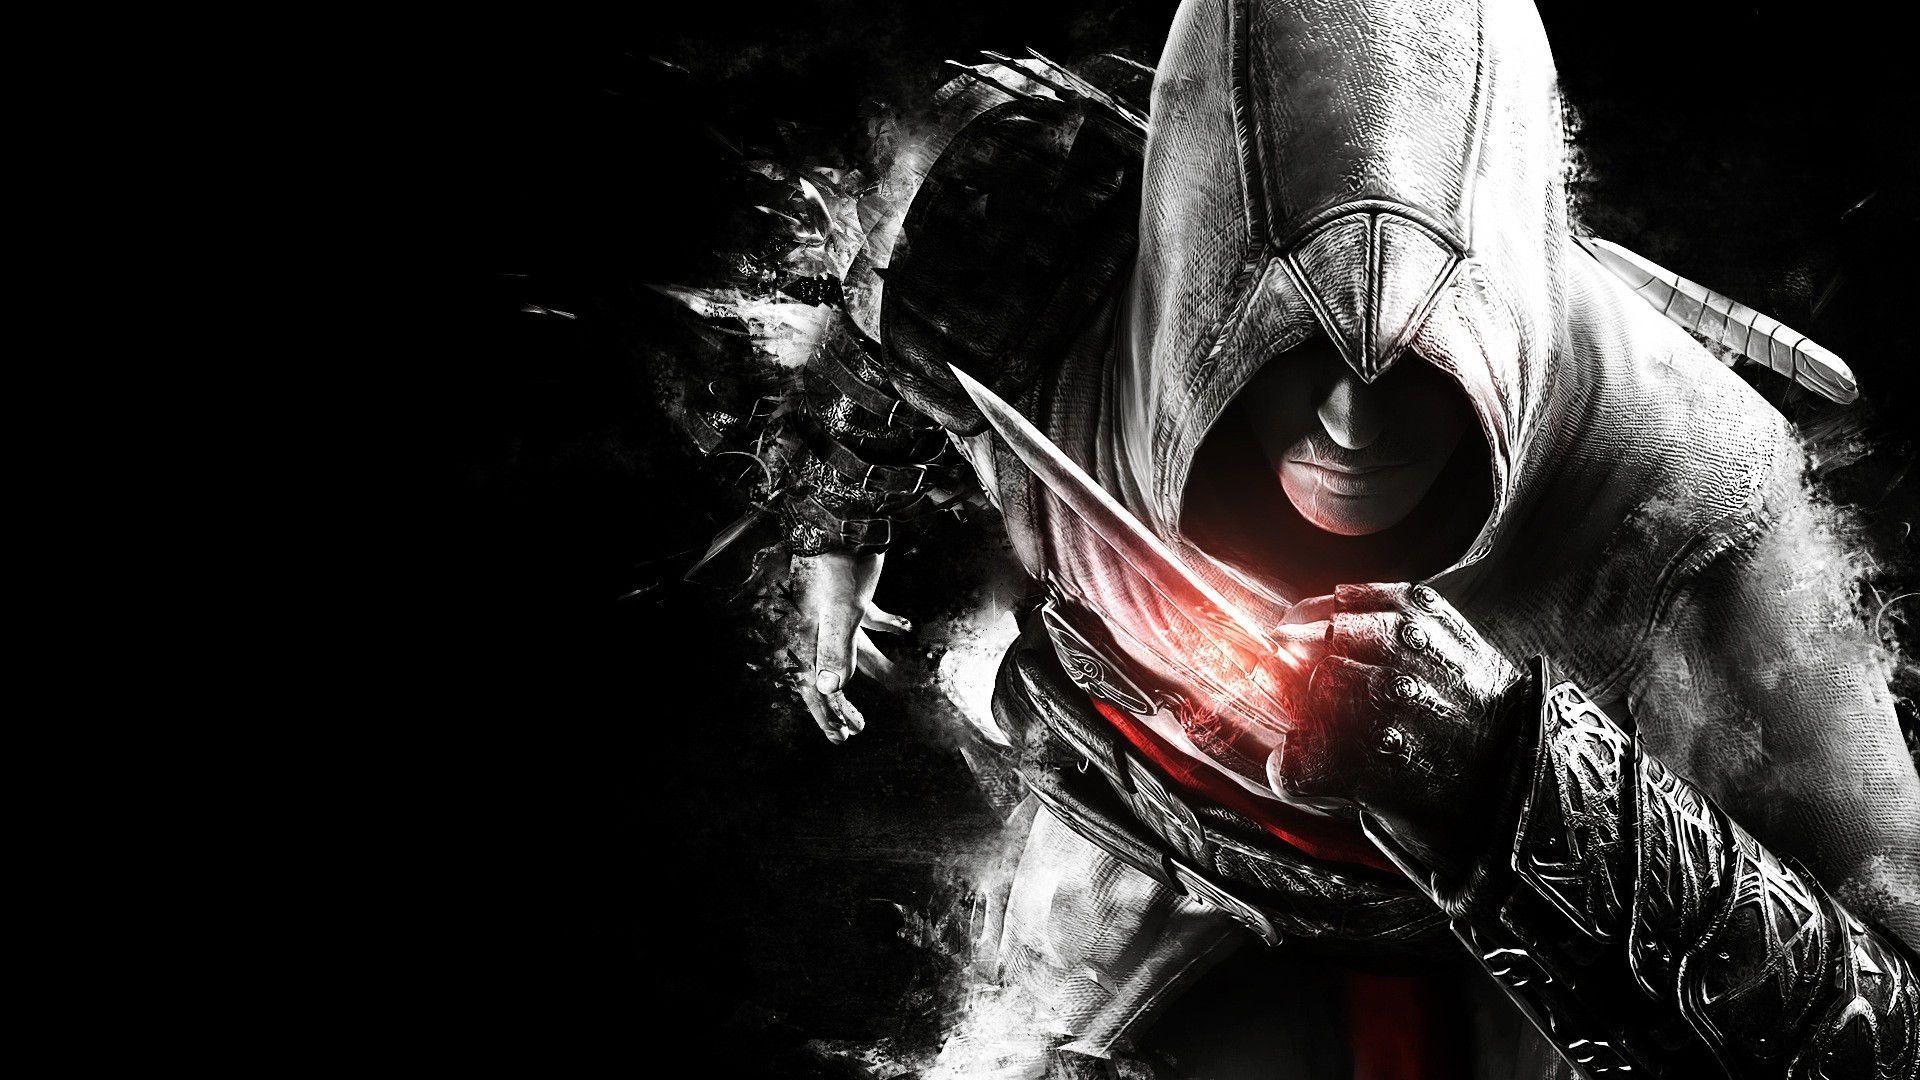 Assassins Creed Artwork 1. Assassin's Creed. Assassin's